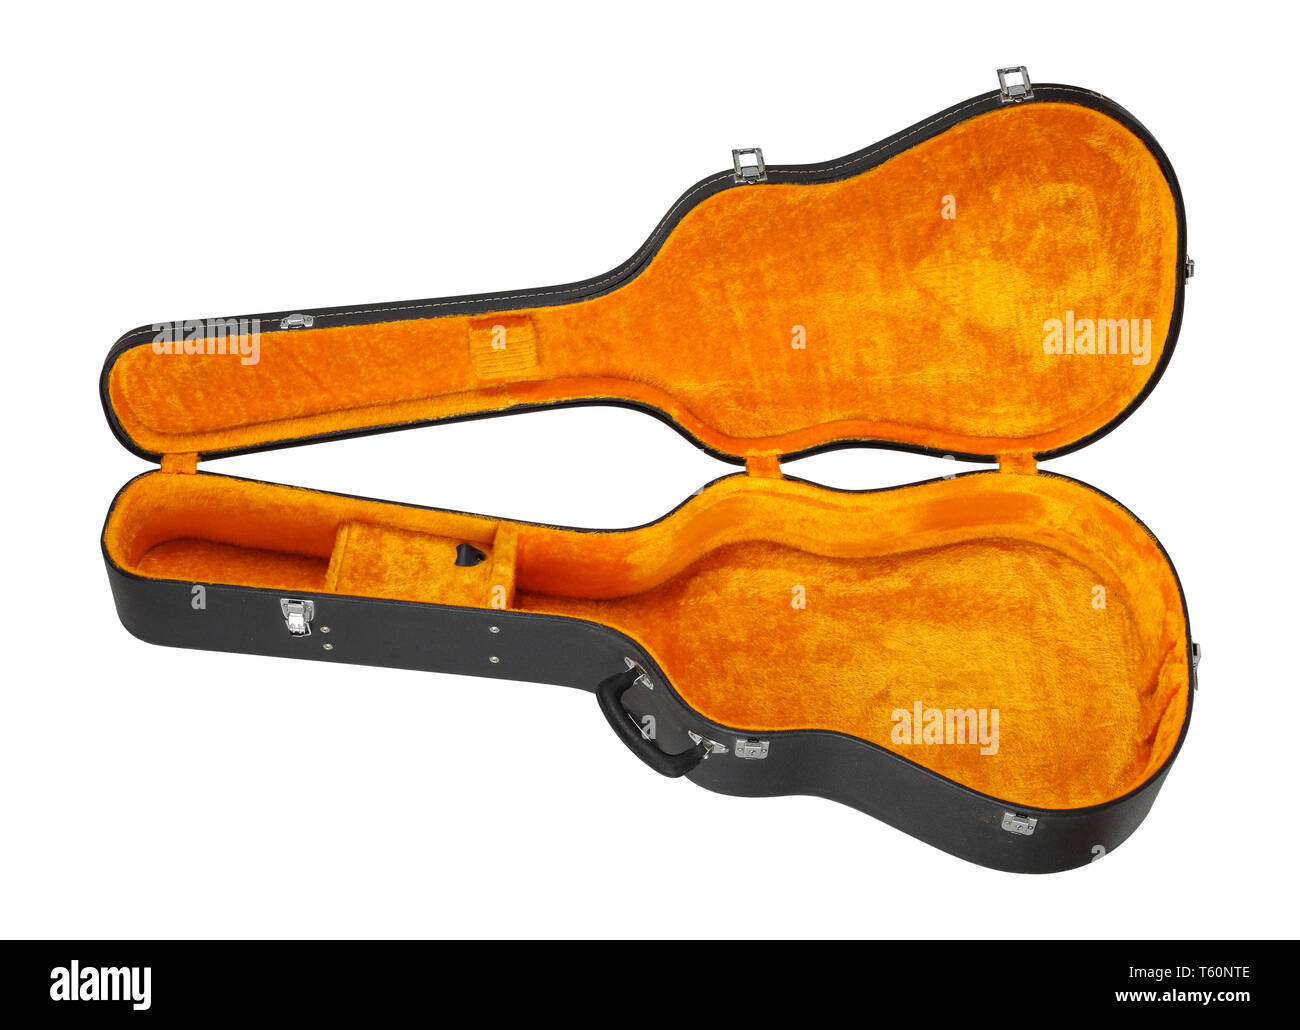 Instrument de musique - noir et jaune ouvert guitare acoustique Etui rigide isolé sur un fond de bois Banque D'Images